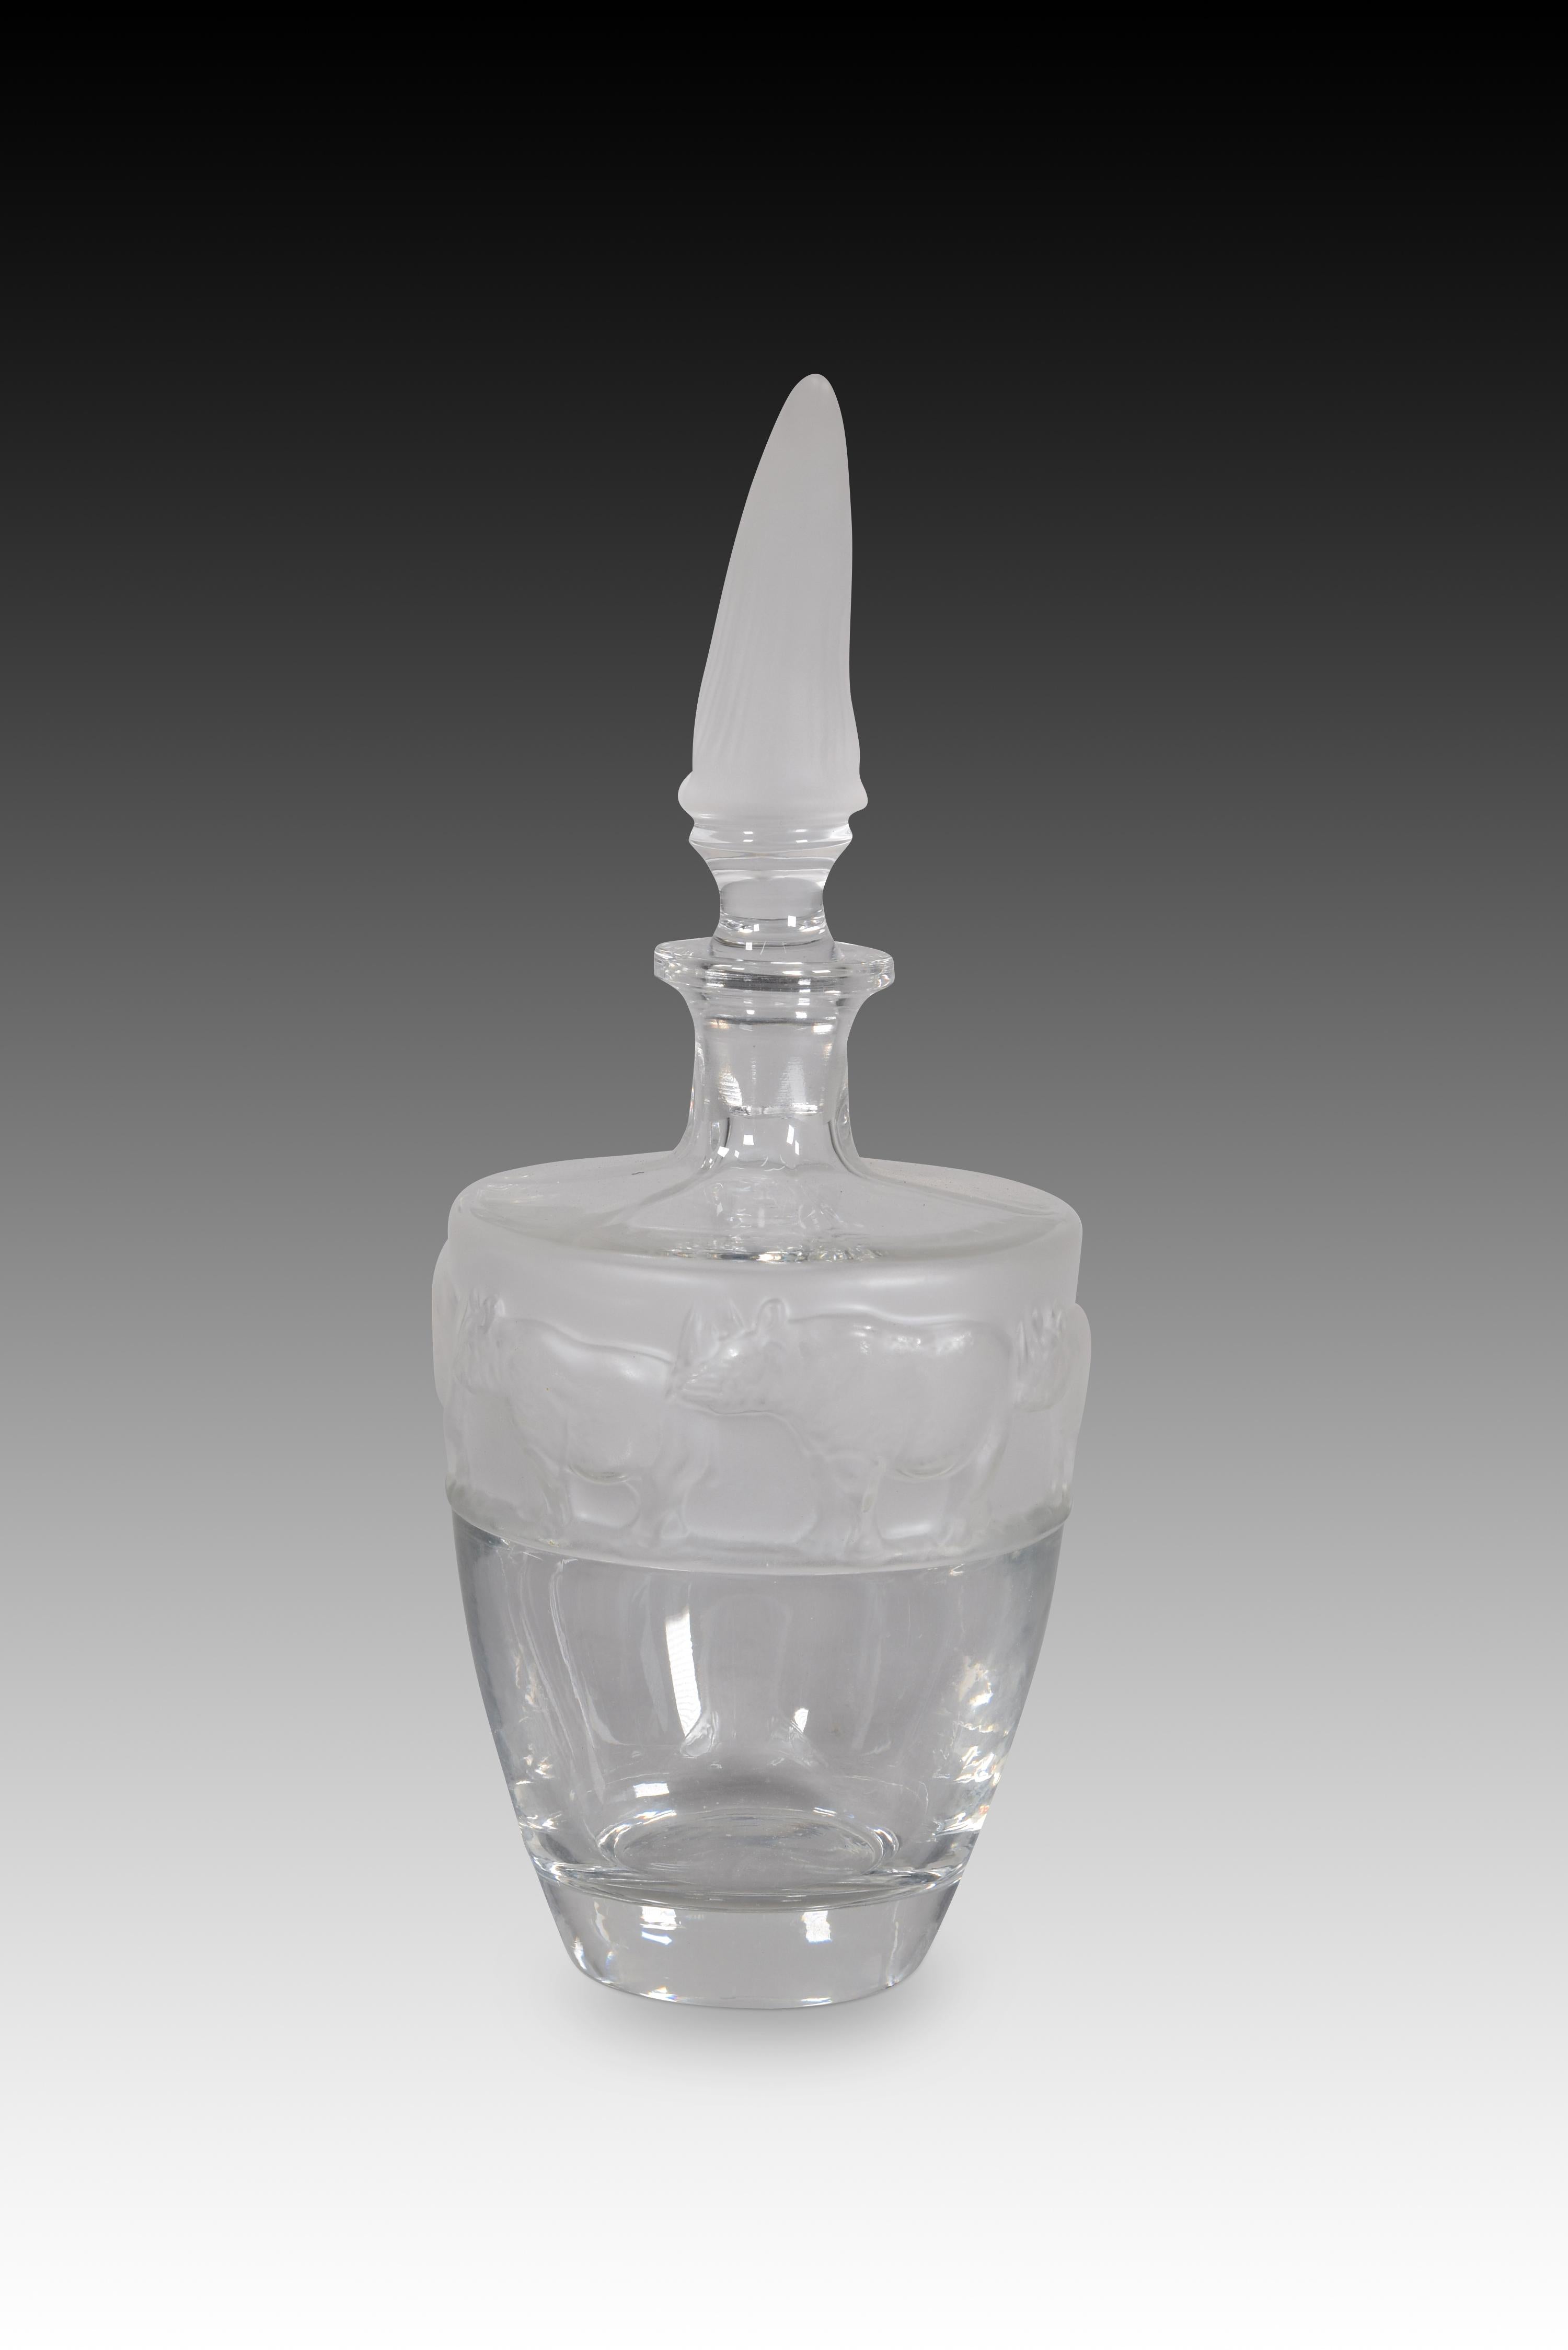 Carafe ou bouteille Rhinoceros Le verre. Nachtmann, Allemagne, XXe siècle. 
Carafe ou bouteille en verre avec un bouchon surmonté d'une forme de corne de rhinocéros et d'un décor de rhinocéros noirs sur le dessus de la pièce. Il appartient à la